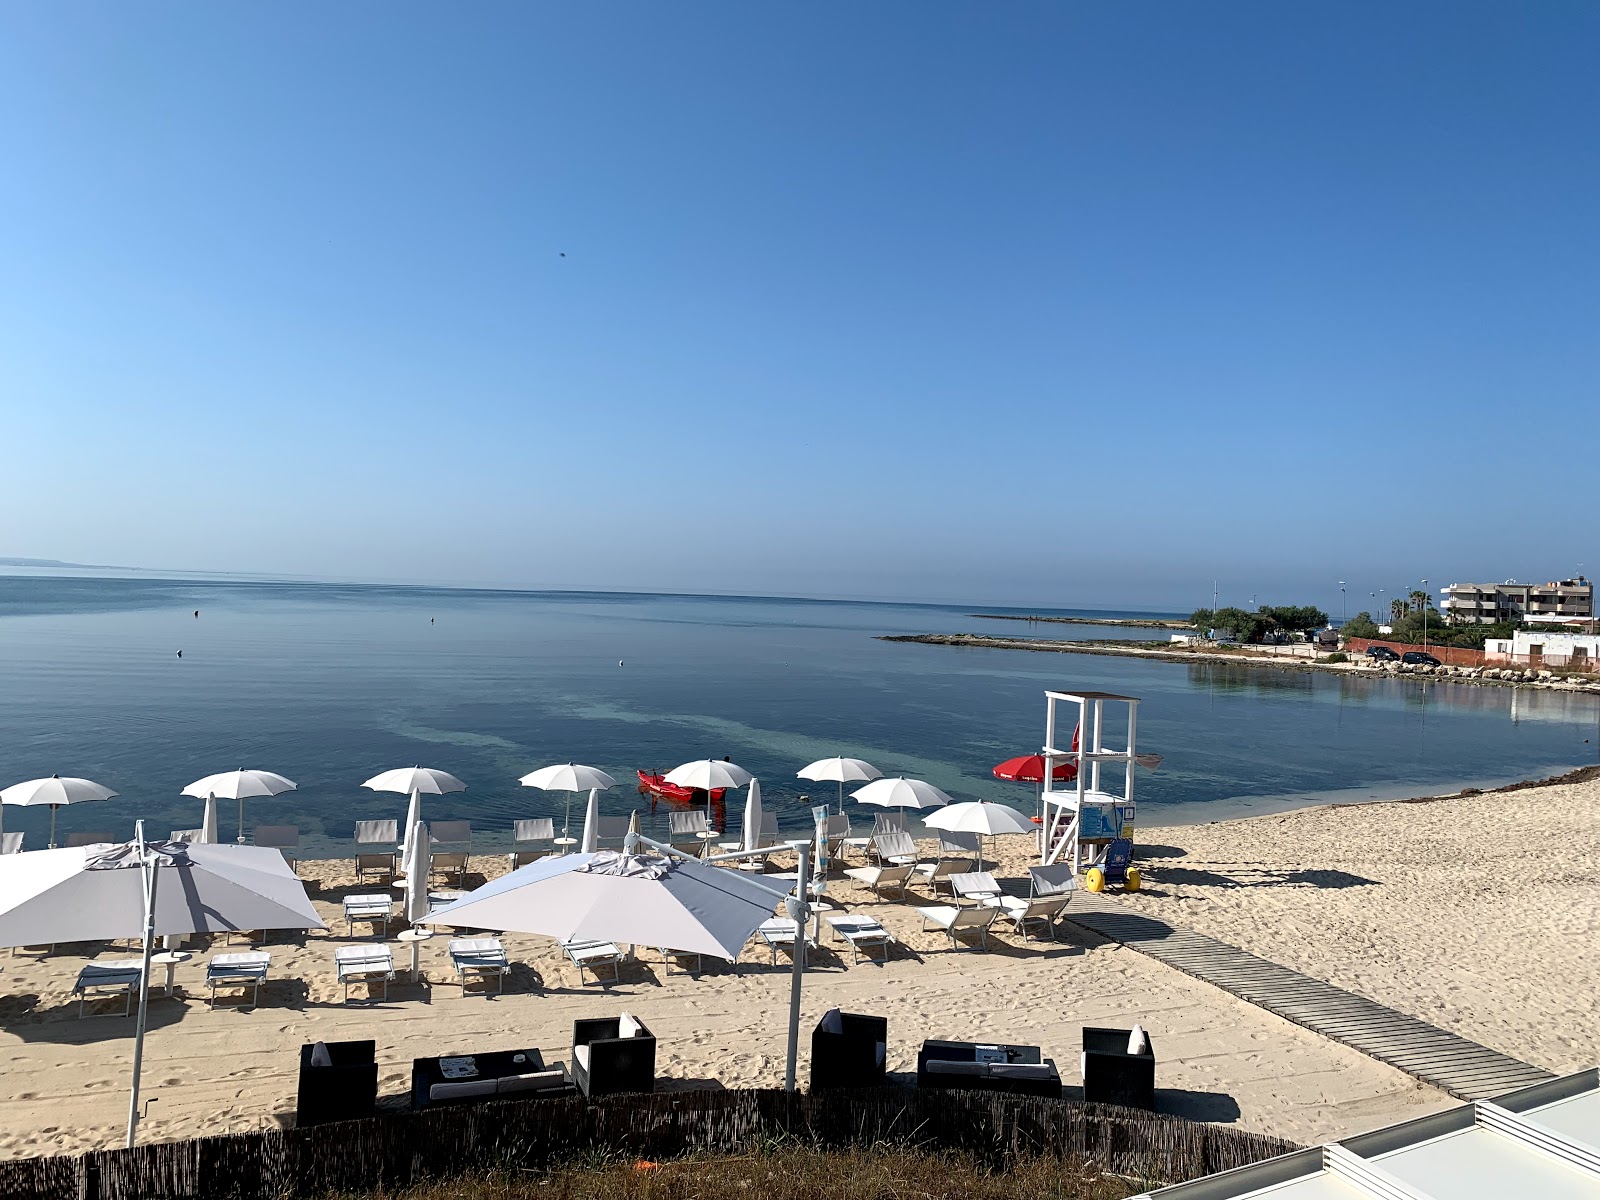 Foto de Spiaggia Porto Cesareo con parcialmente limpio nivel de limpieza